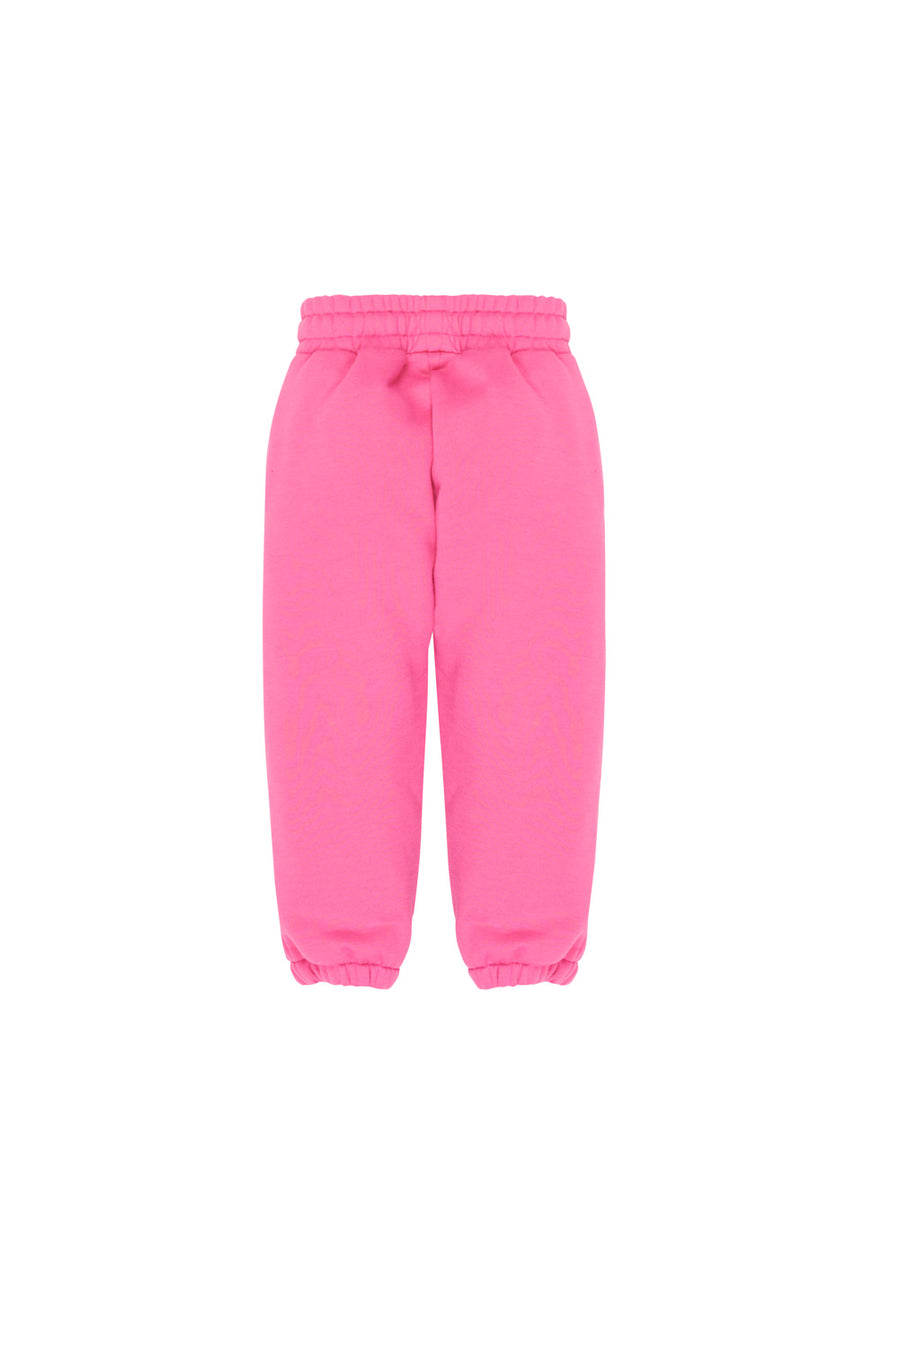 Pantalones Pink niña